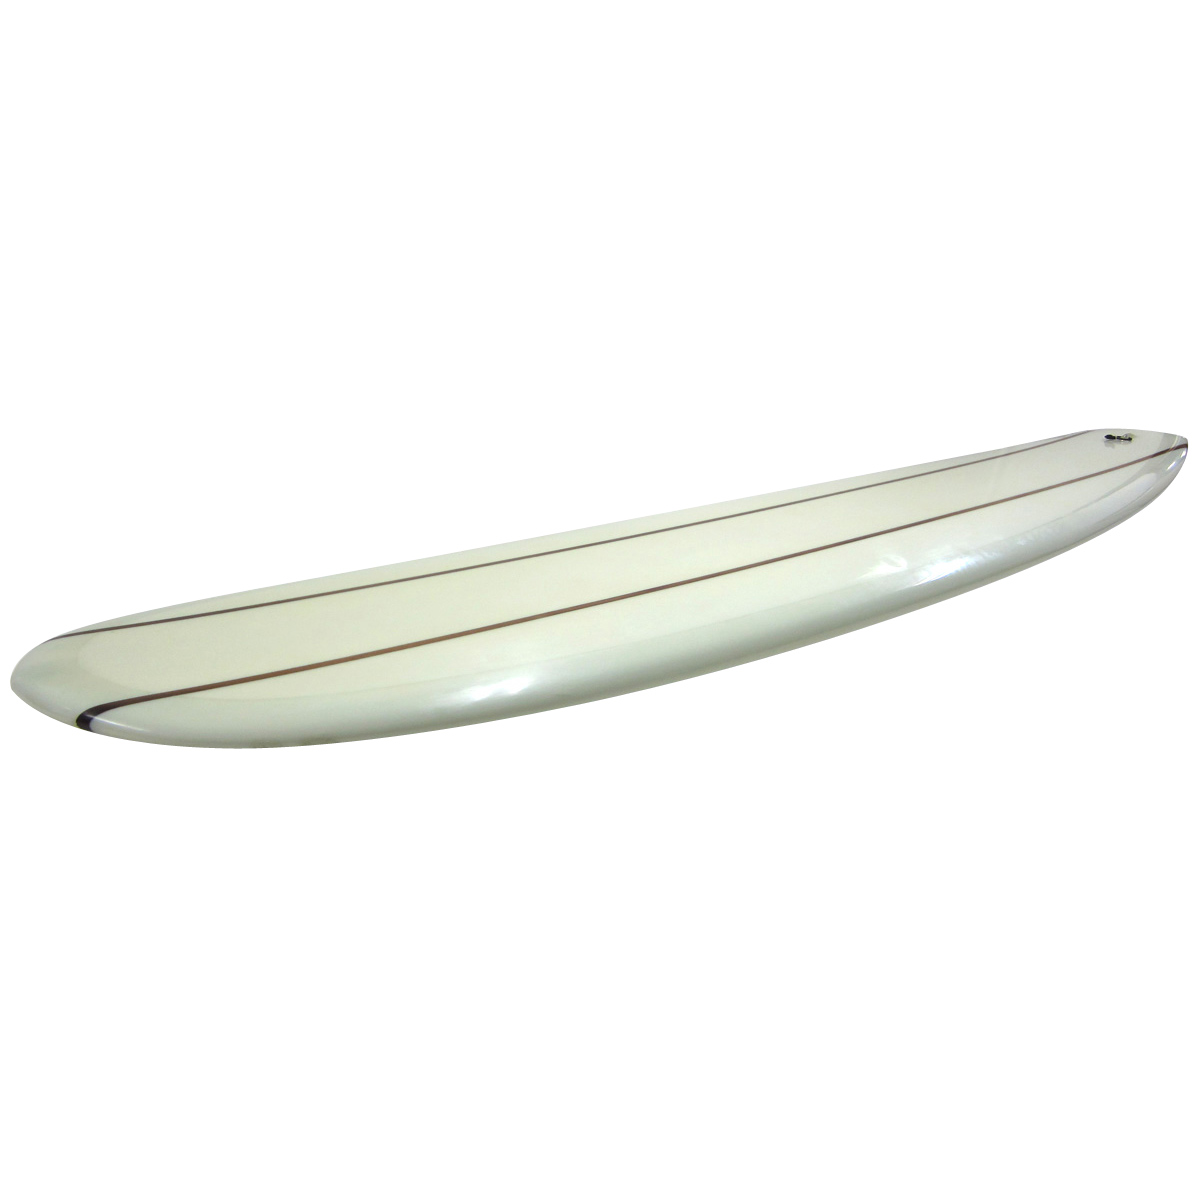 KI Surfboards / Super Noserider 9`4 Special Clark Form